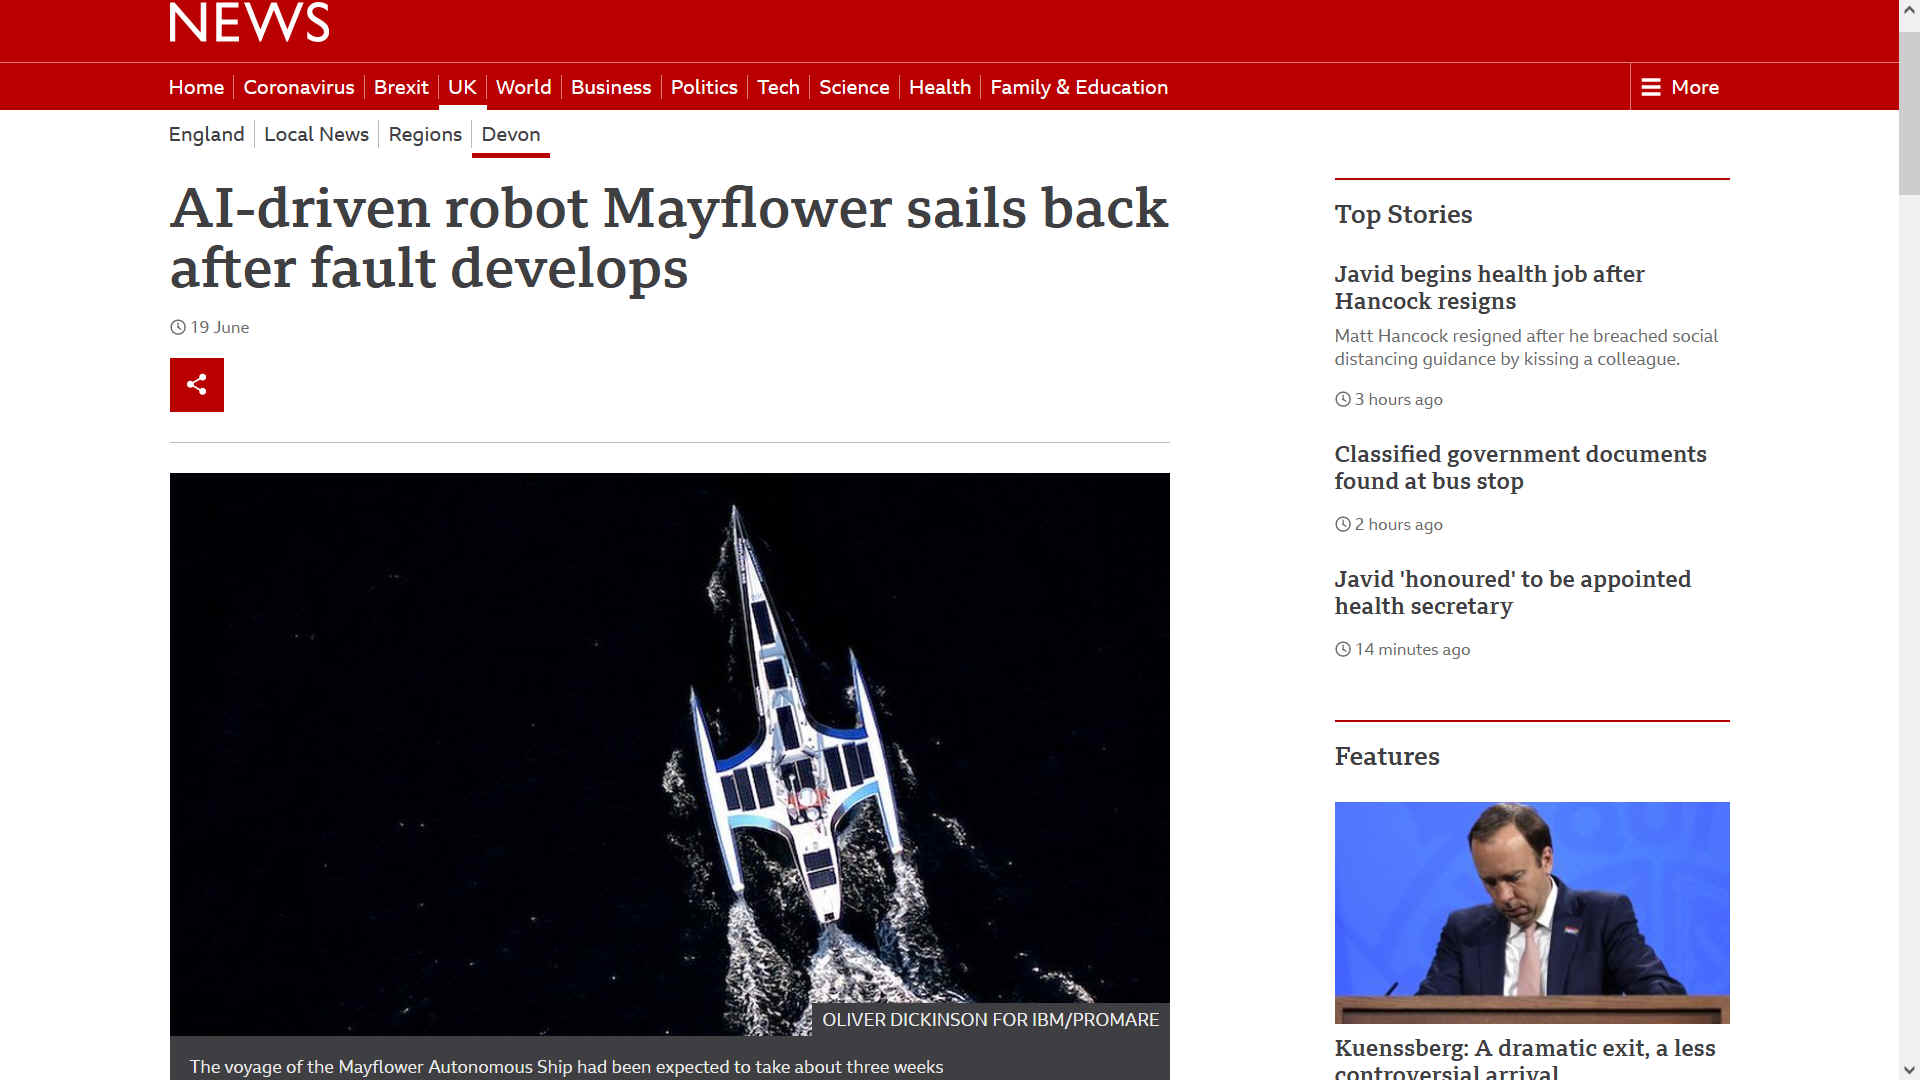 Mayflower sails back after fault develops